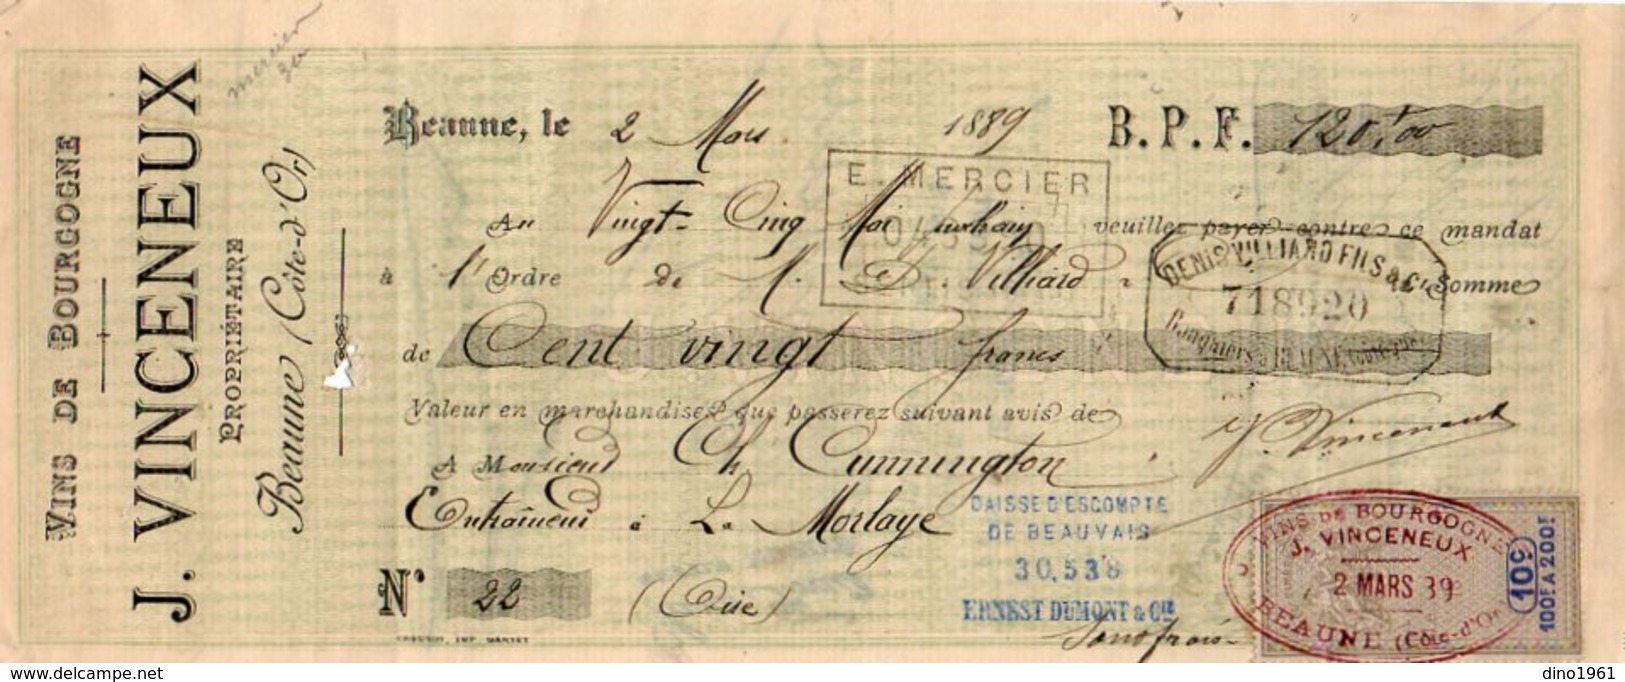 VP10.114 -  Lettre De Change - Vins Fins & Ordinaires De Bourgogne J. VINCENEUX à BEAUNE - Letras De Cambio